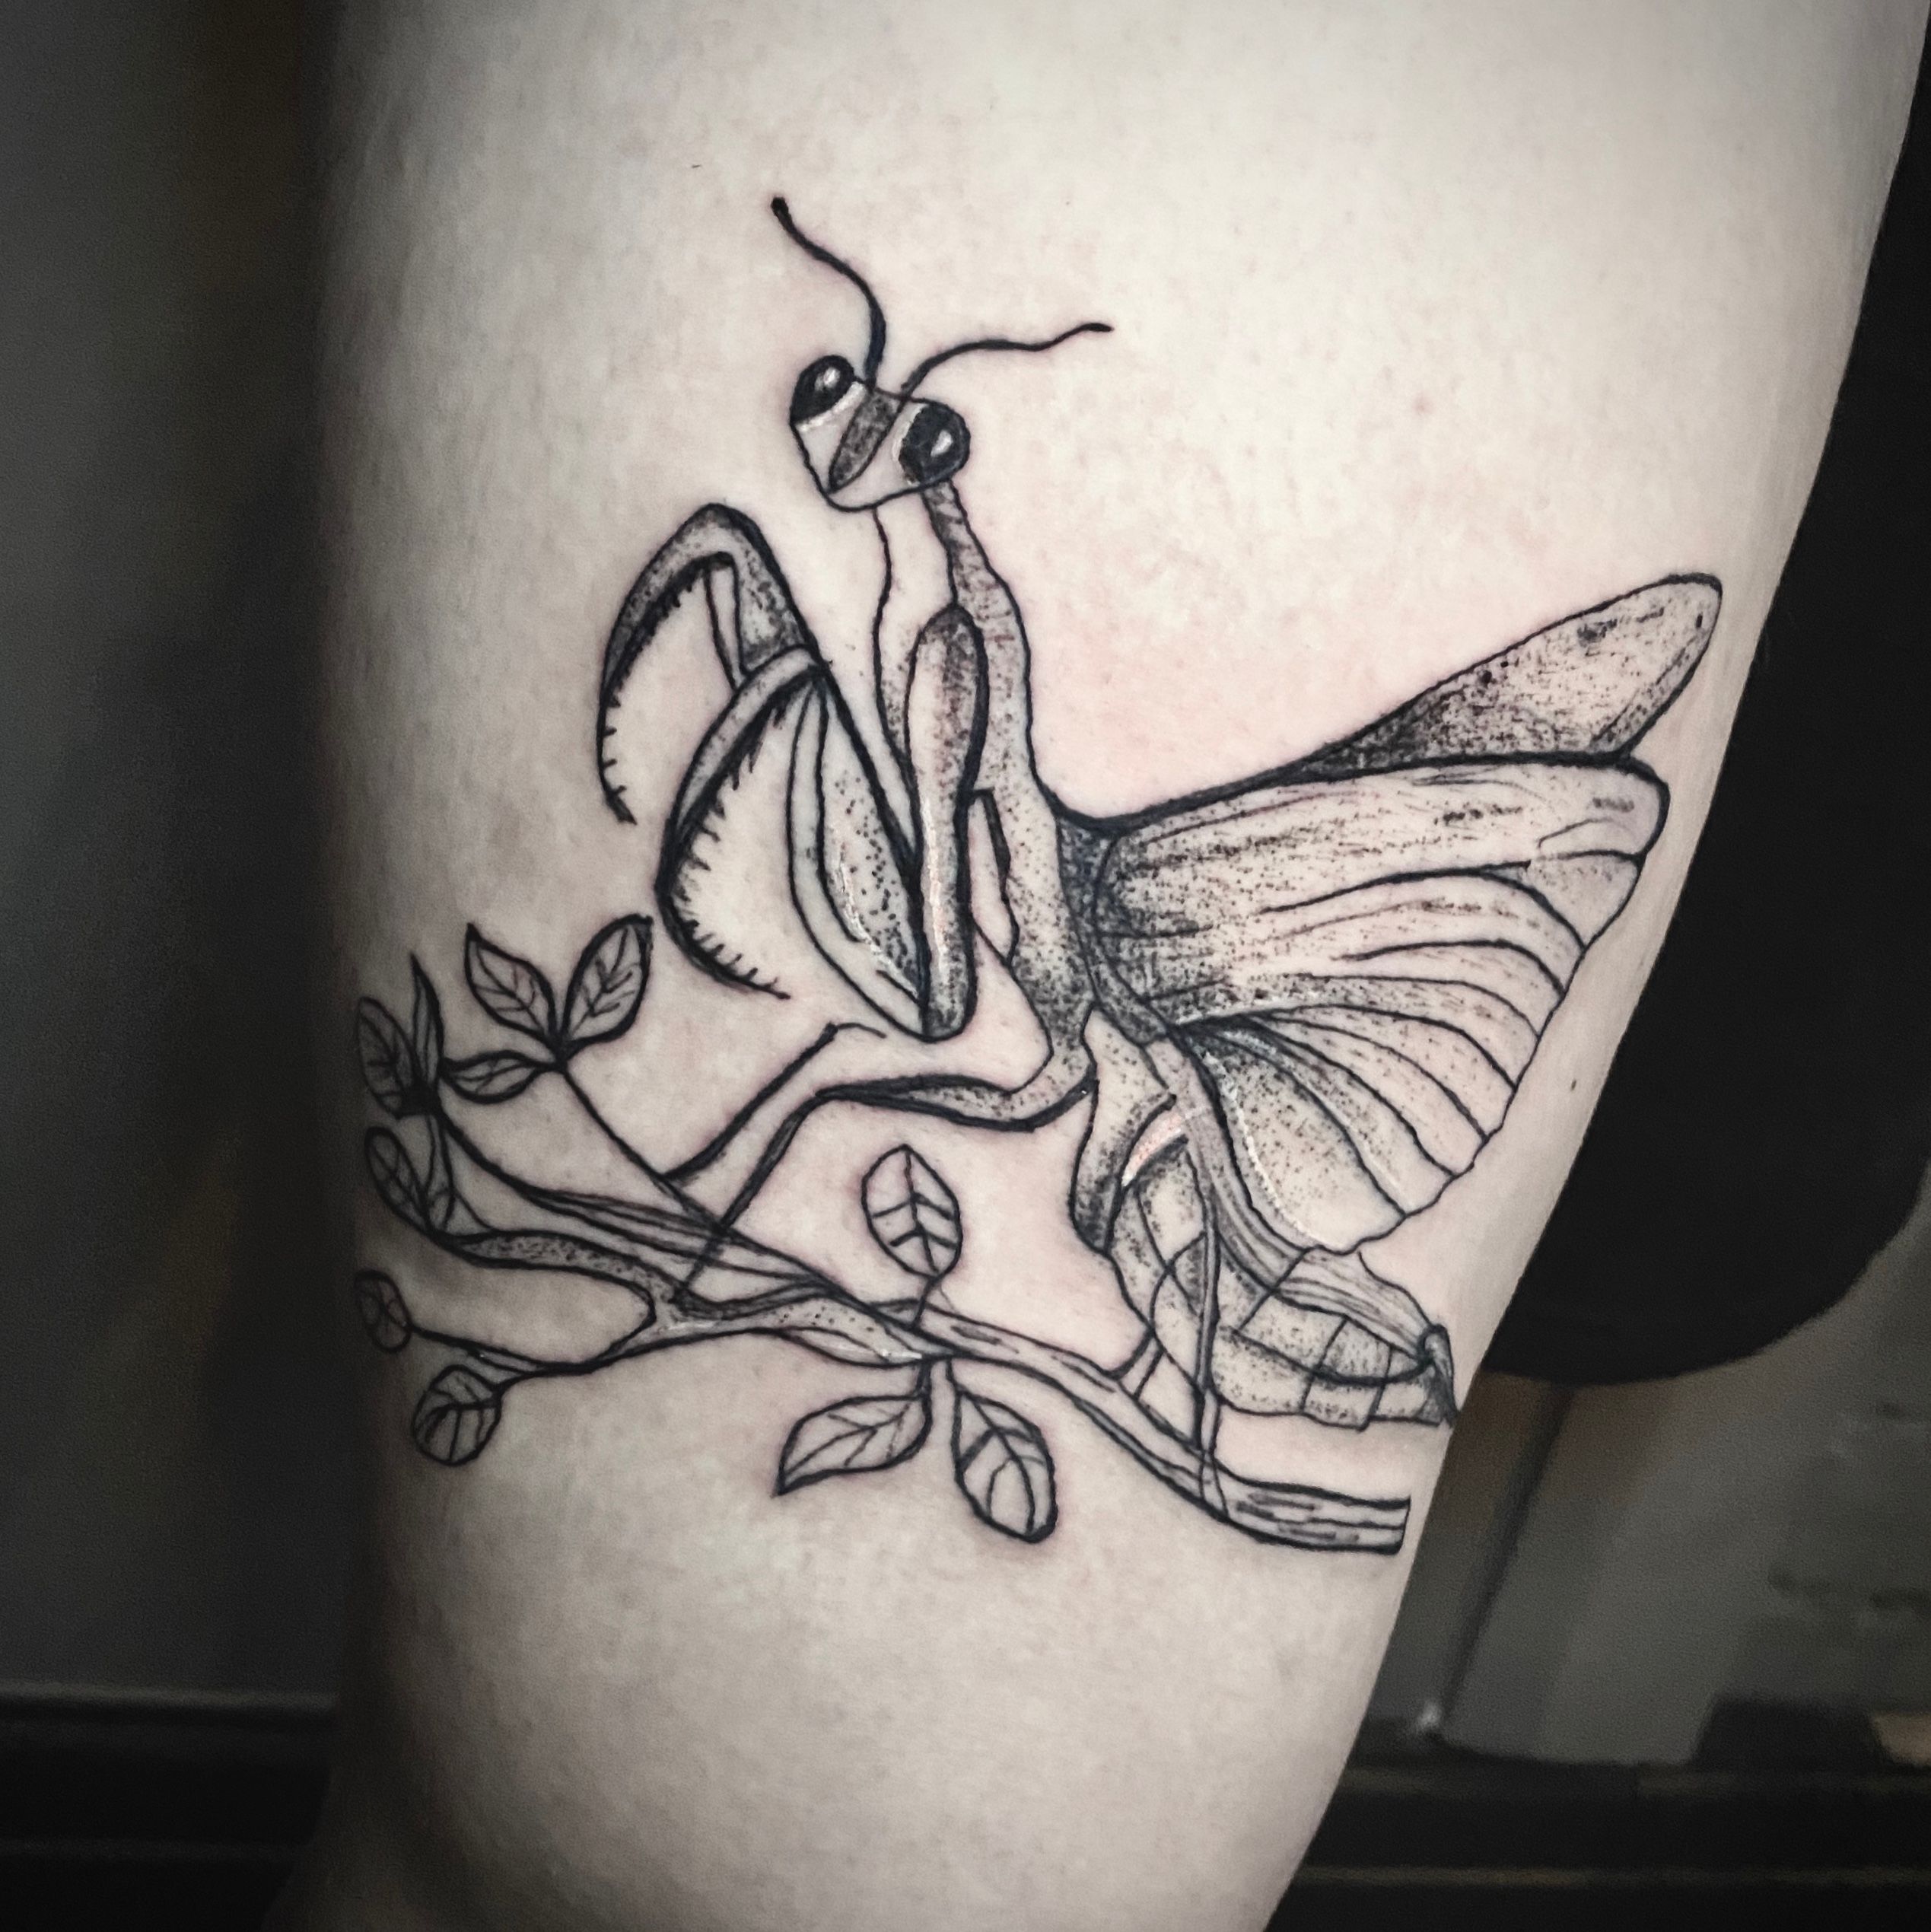 50 Praying Mantis Tattoo Designs For Men  Insect Ink Ideas  Mantis tattoo  Insect tattoo Tattoo designs men